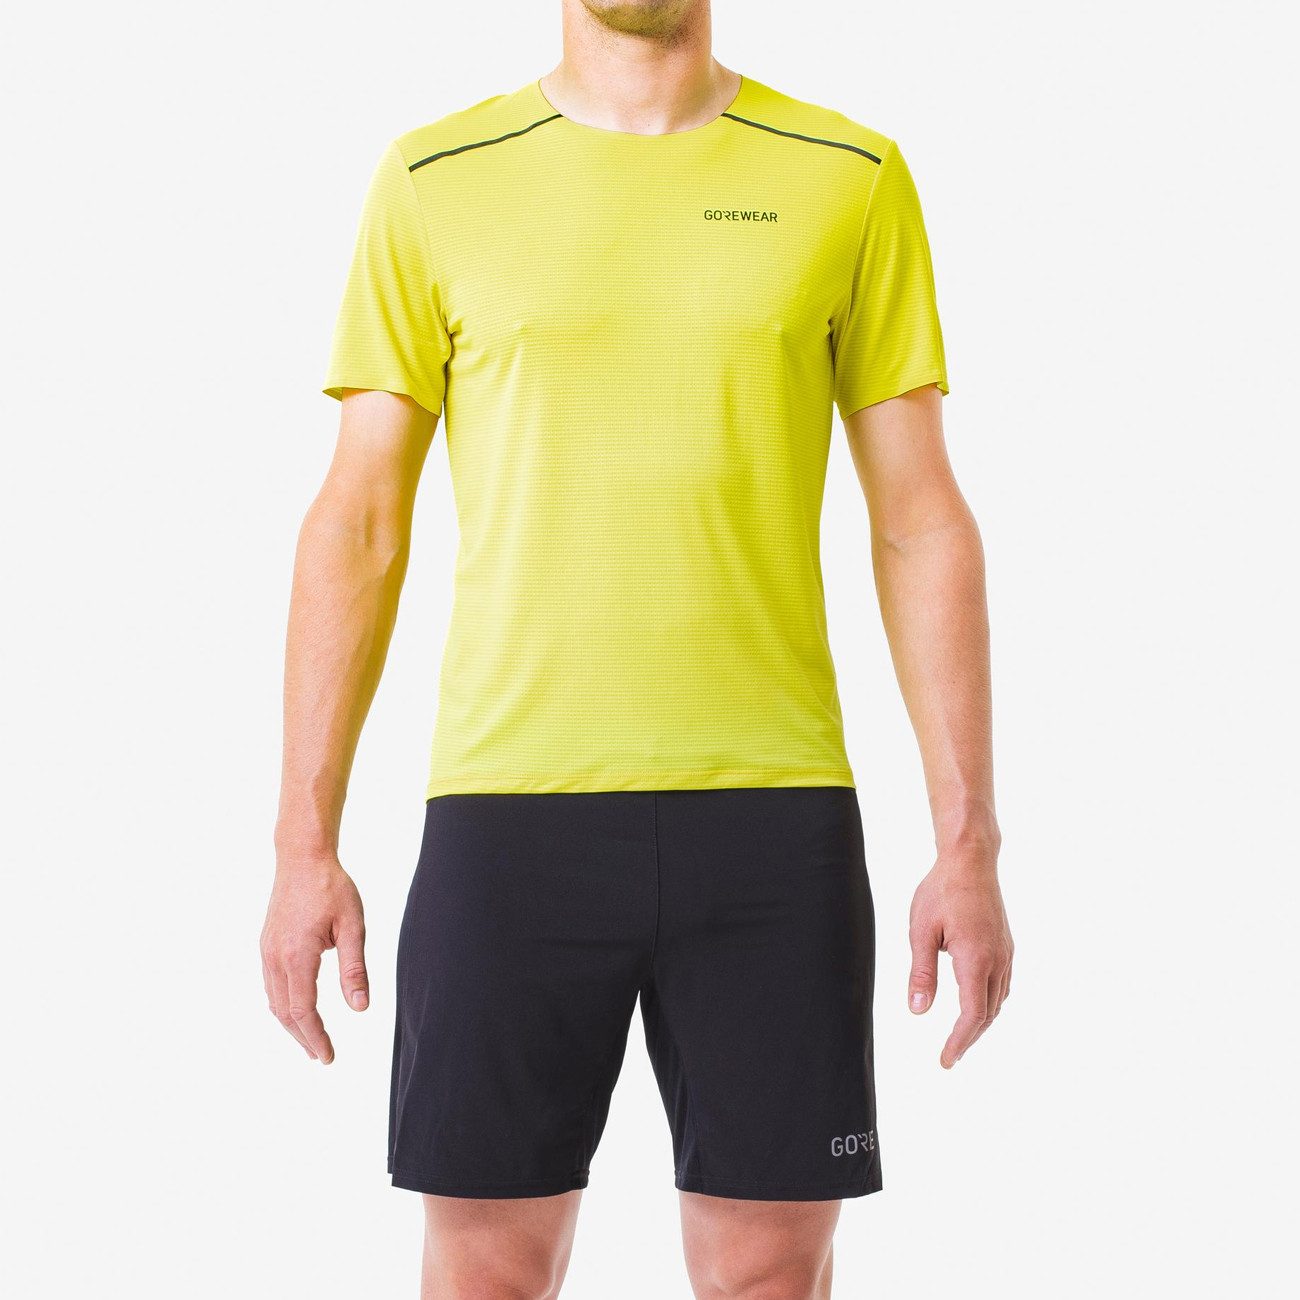 GORE® Wear Laufshirt Gore Wear Contest 2.0 Tee Herren Washed Neon Yellow L